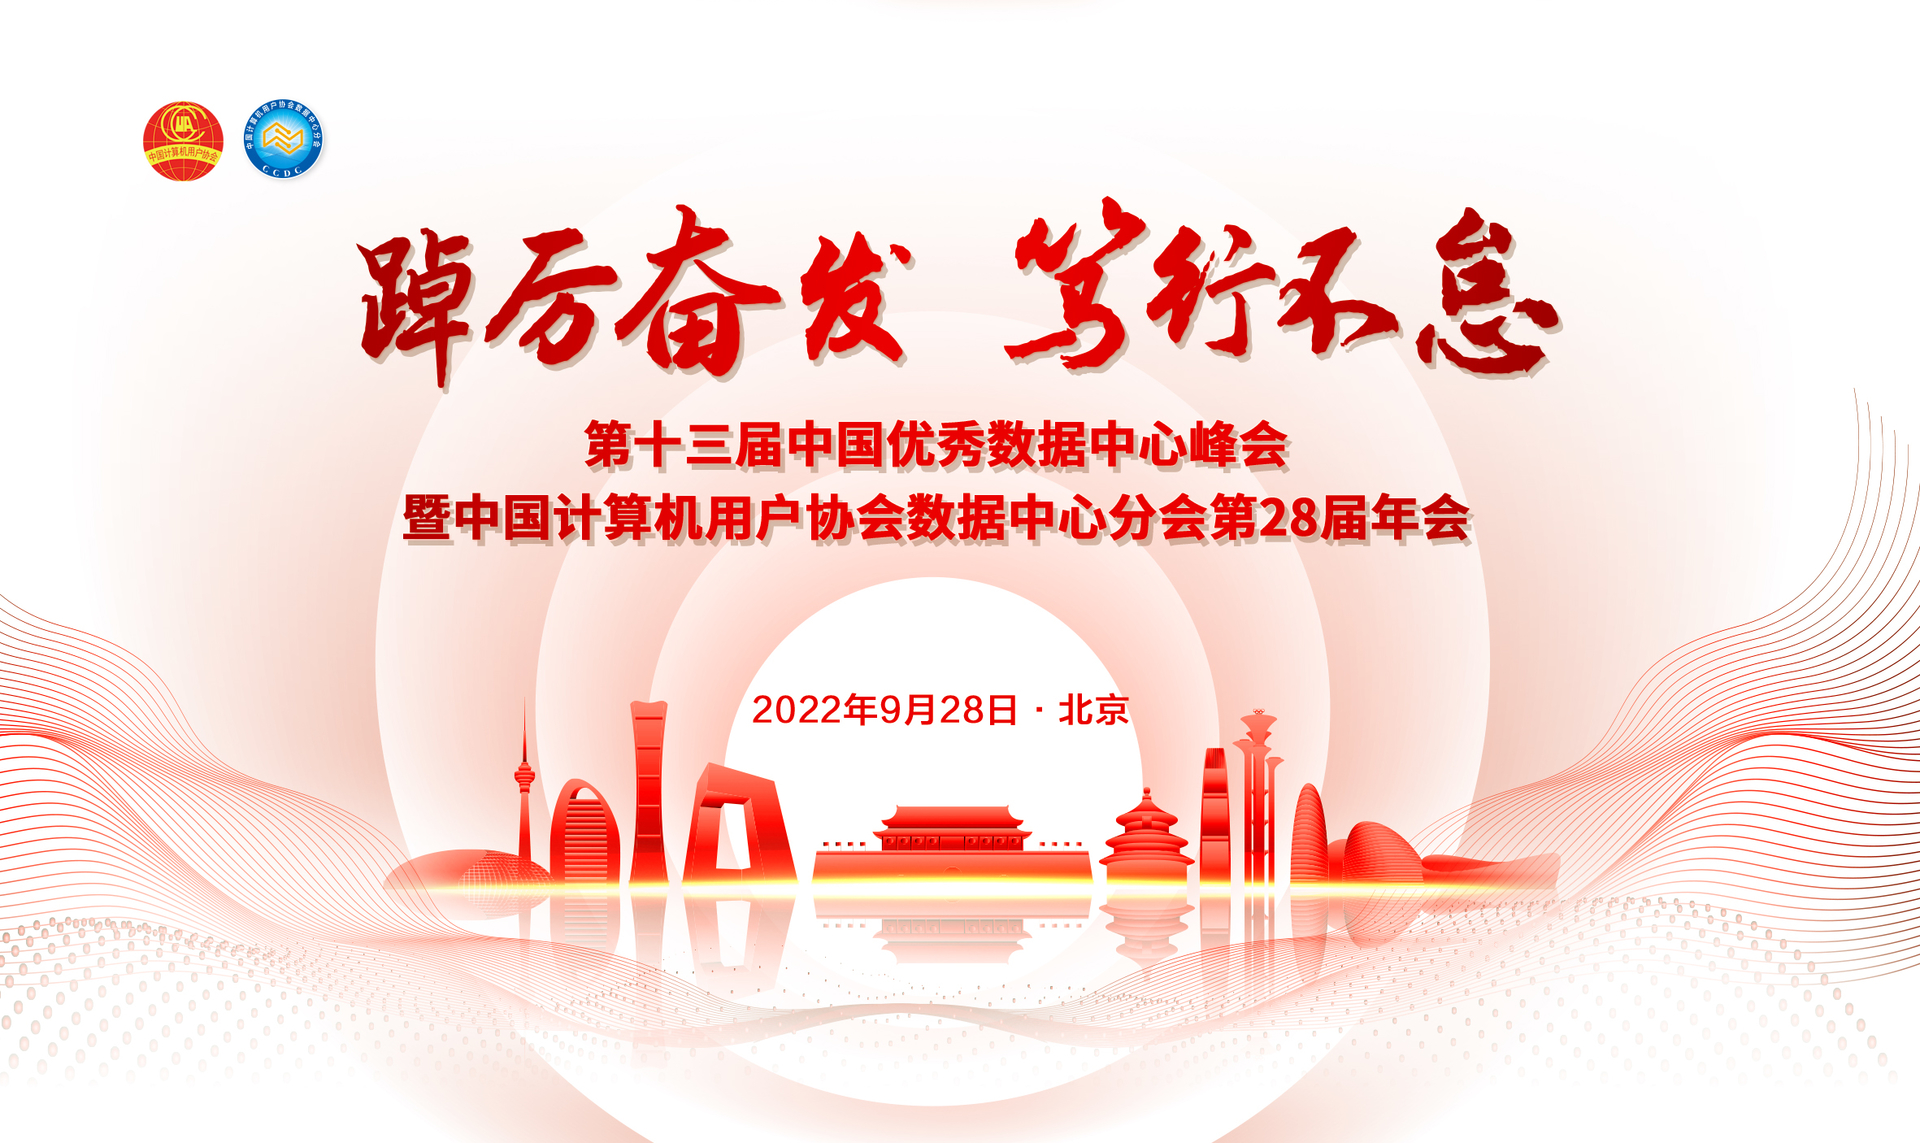 “踔厉奋发 笃行不怠”  第十三届中国优秀数据中心峰会暨中国计算机用户协会数据中心分会第28届年会